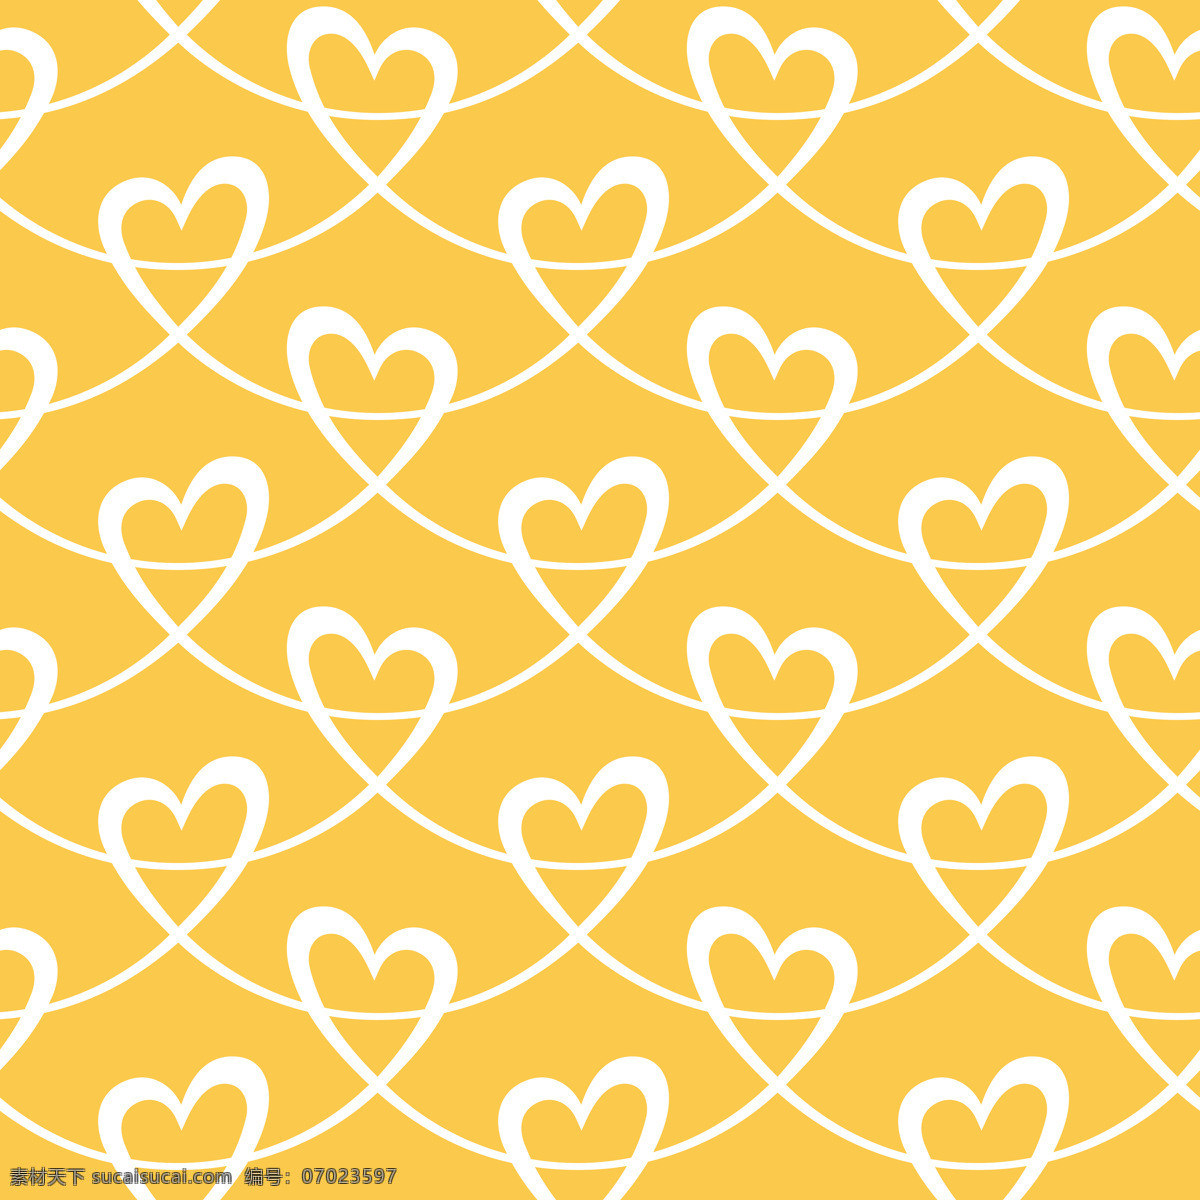 黄色爱心背景 黄色 爱心背景 黄色背景 爱心 心形 爱心壁纸 彩色 背景底纹 爱心设计 底纹边框